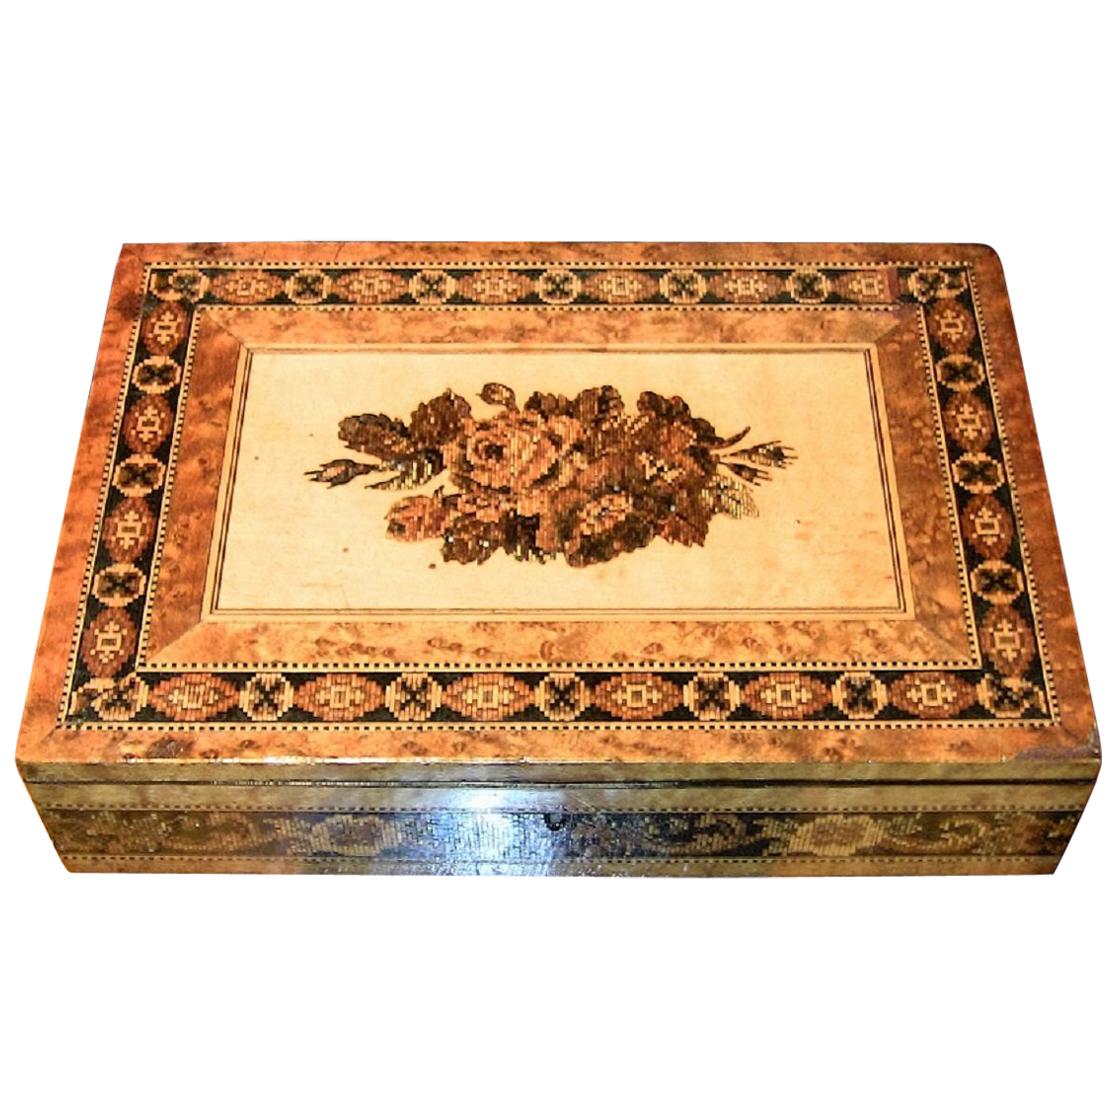 Boîte de table stationnaire Tunbridgeware anglaise du 19e siècle, micro-mosaïque